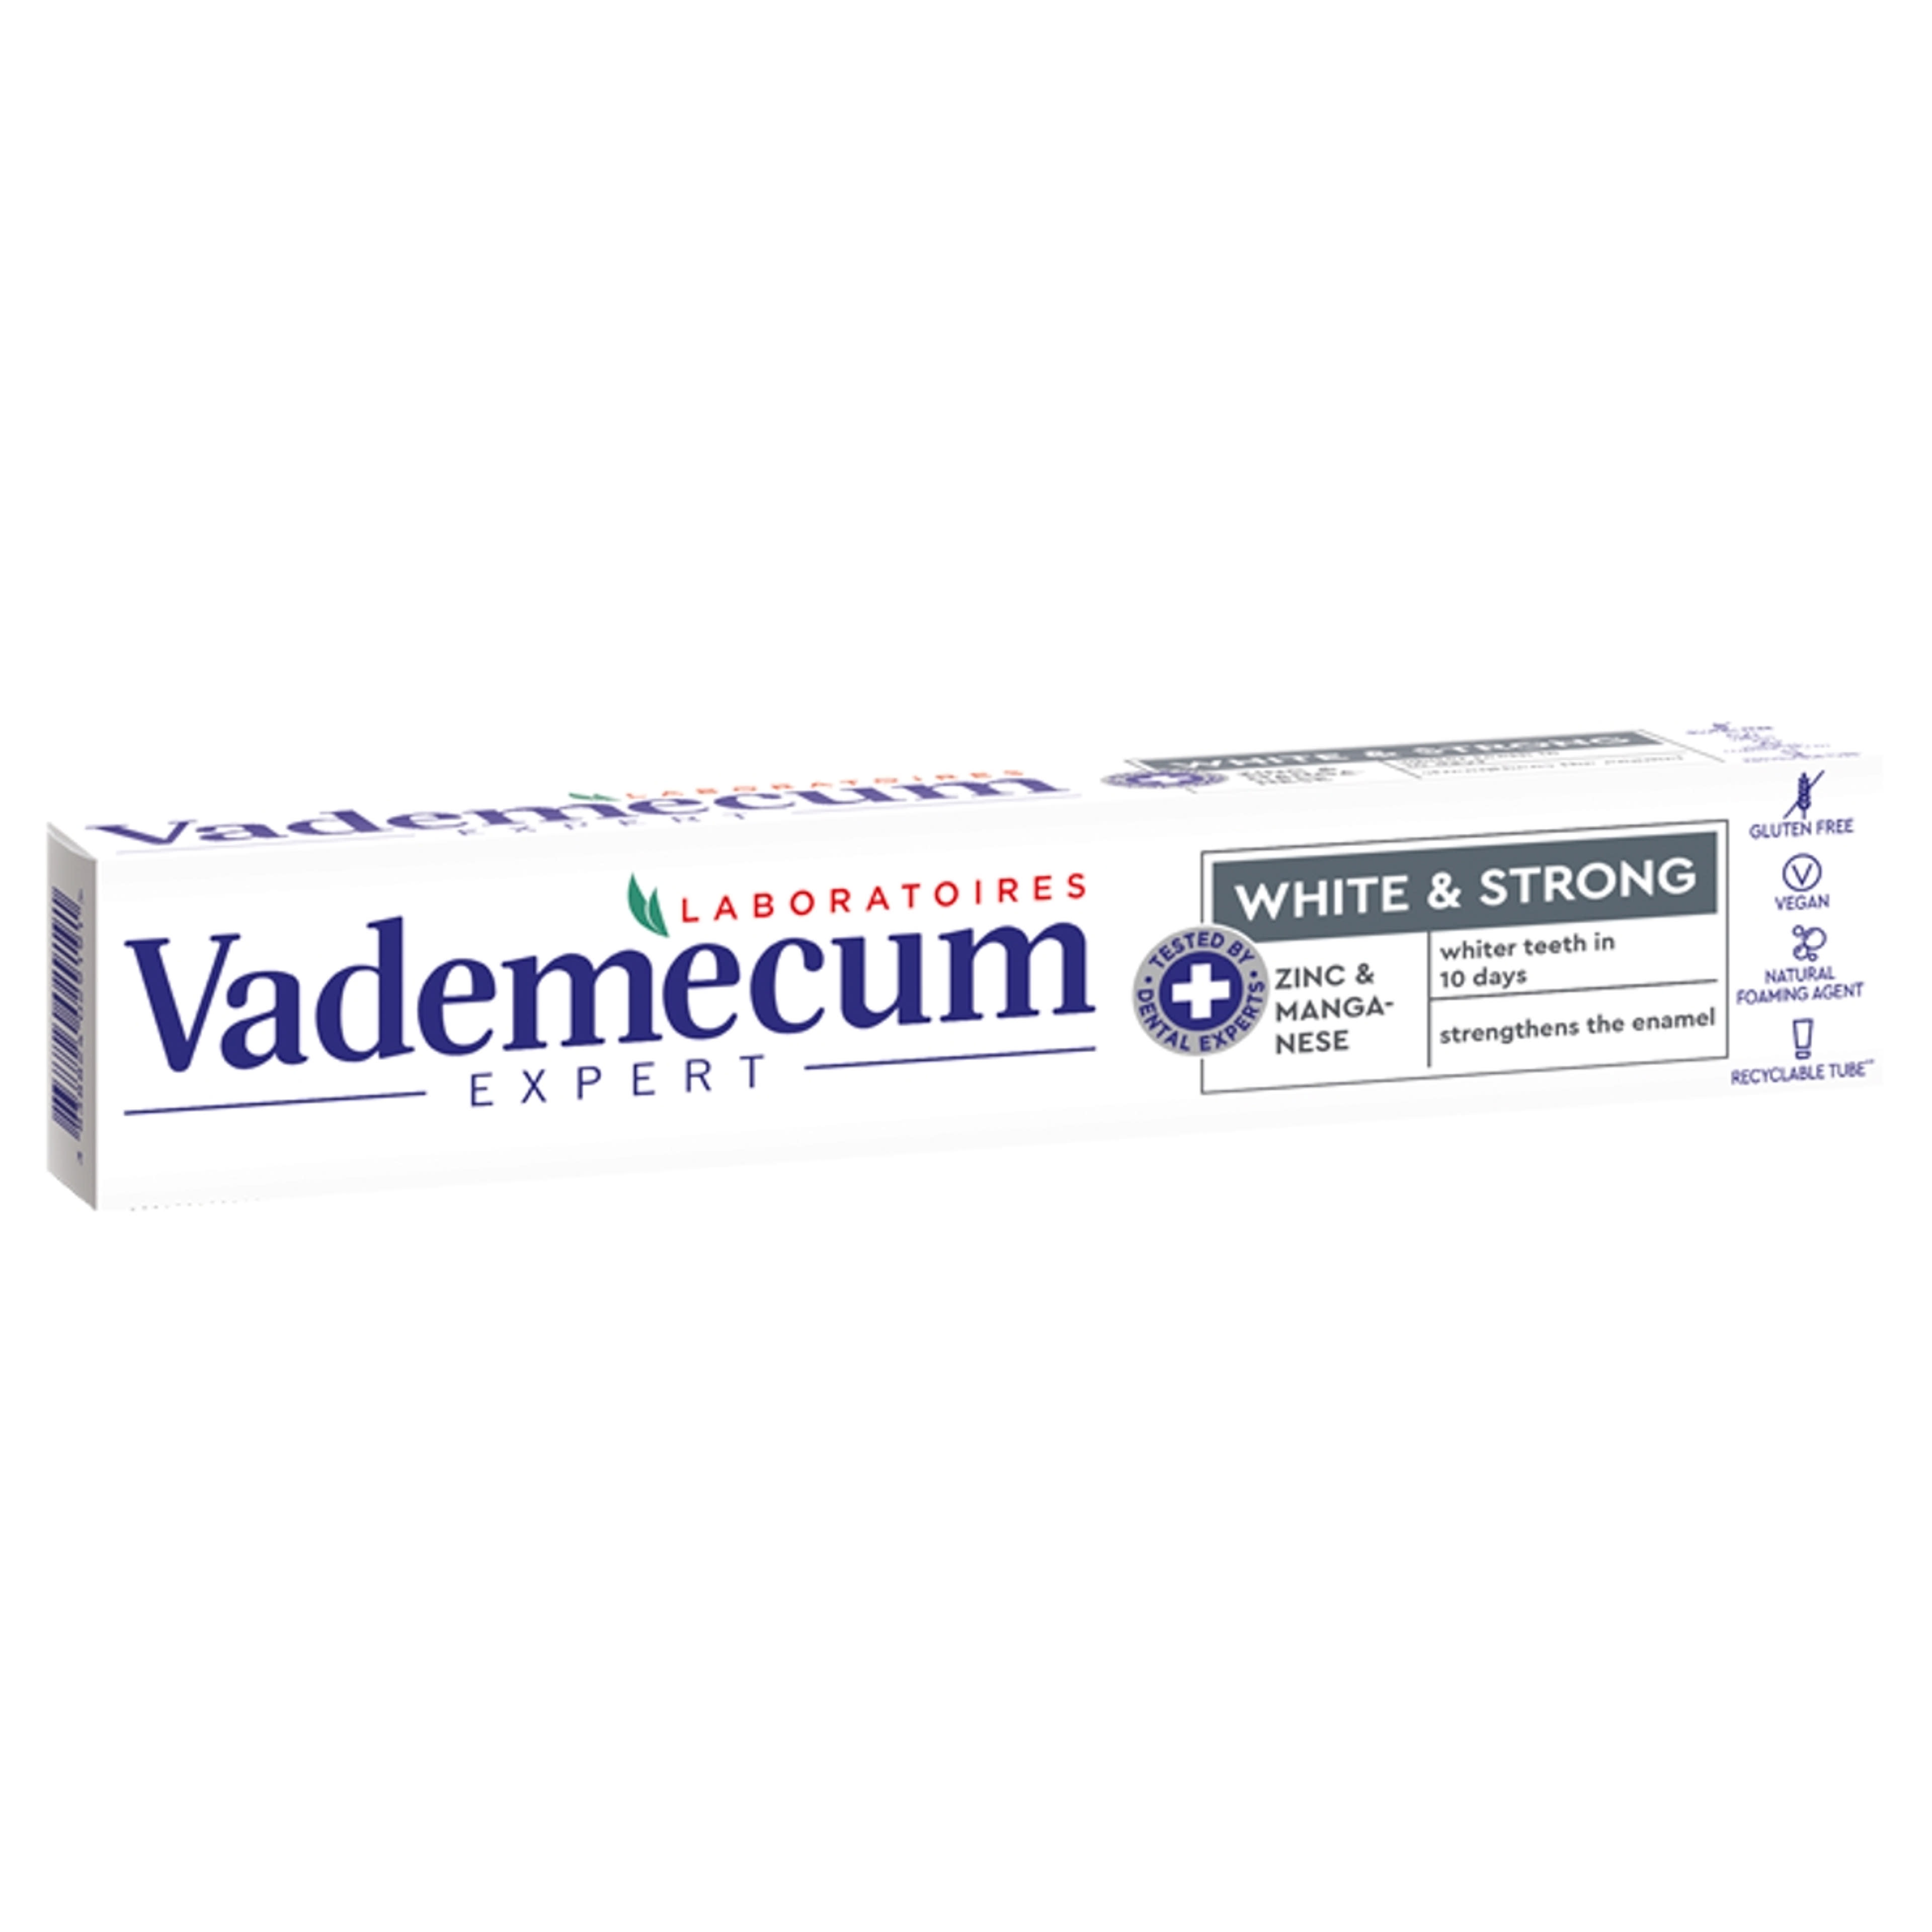 Vademecum Expert White & Strong fogkrém - 75 ml-1